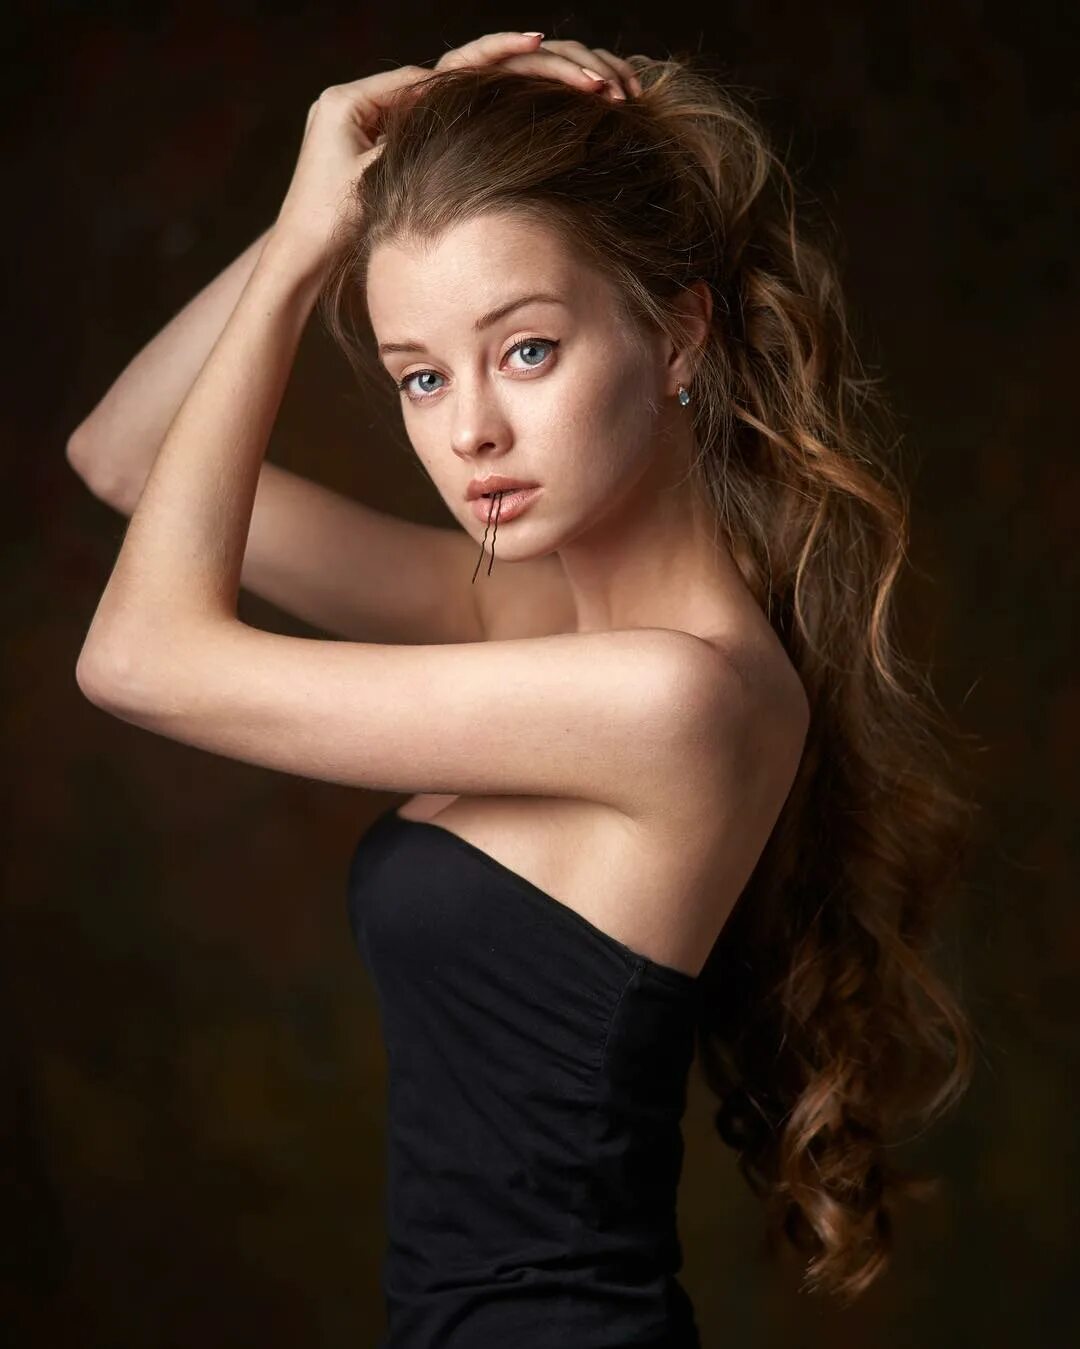 Alexander Vinogradov. Maria models